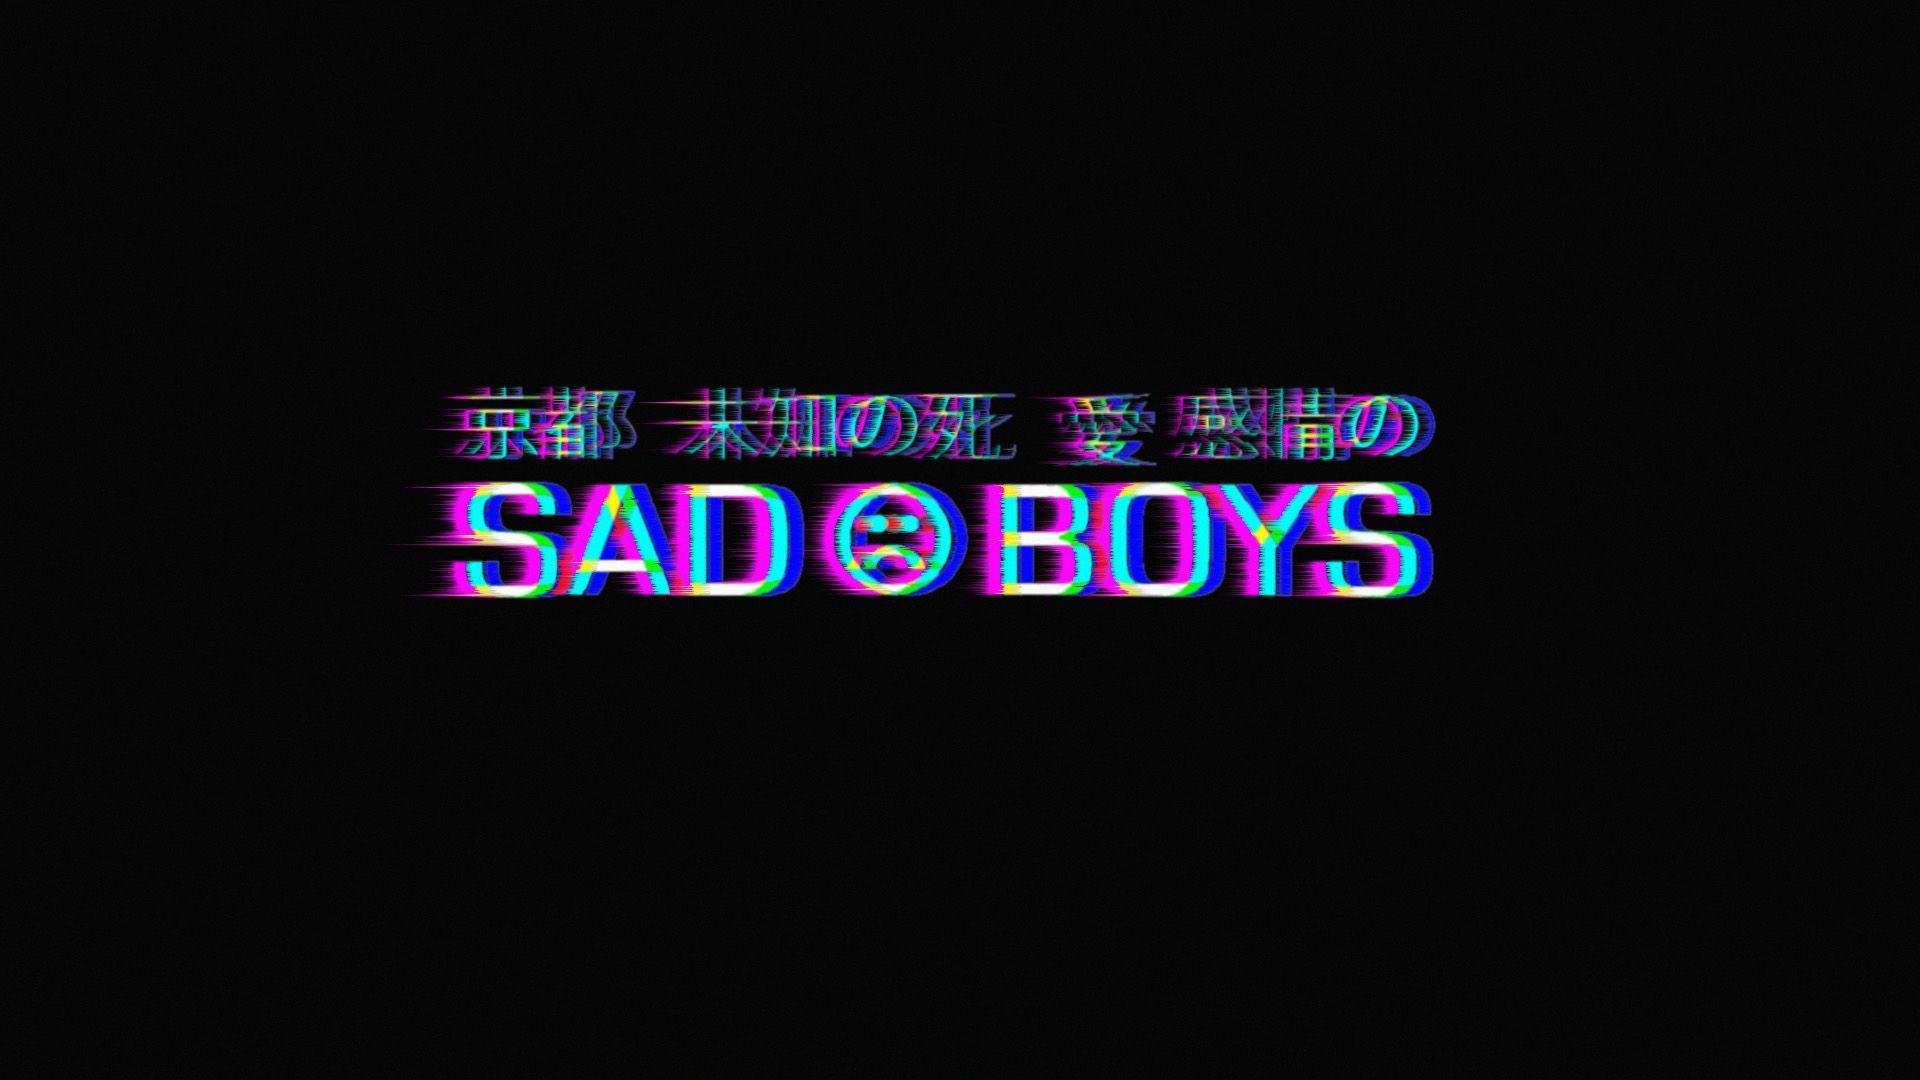 Cool Sad Boy Wallpapers - Top Những Hình Ảnh Đẹp